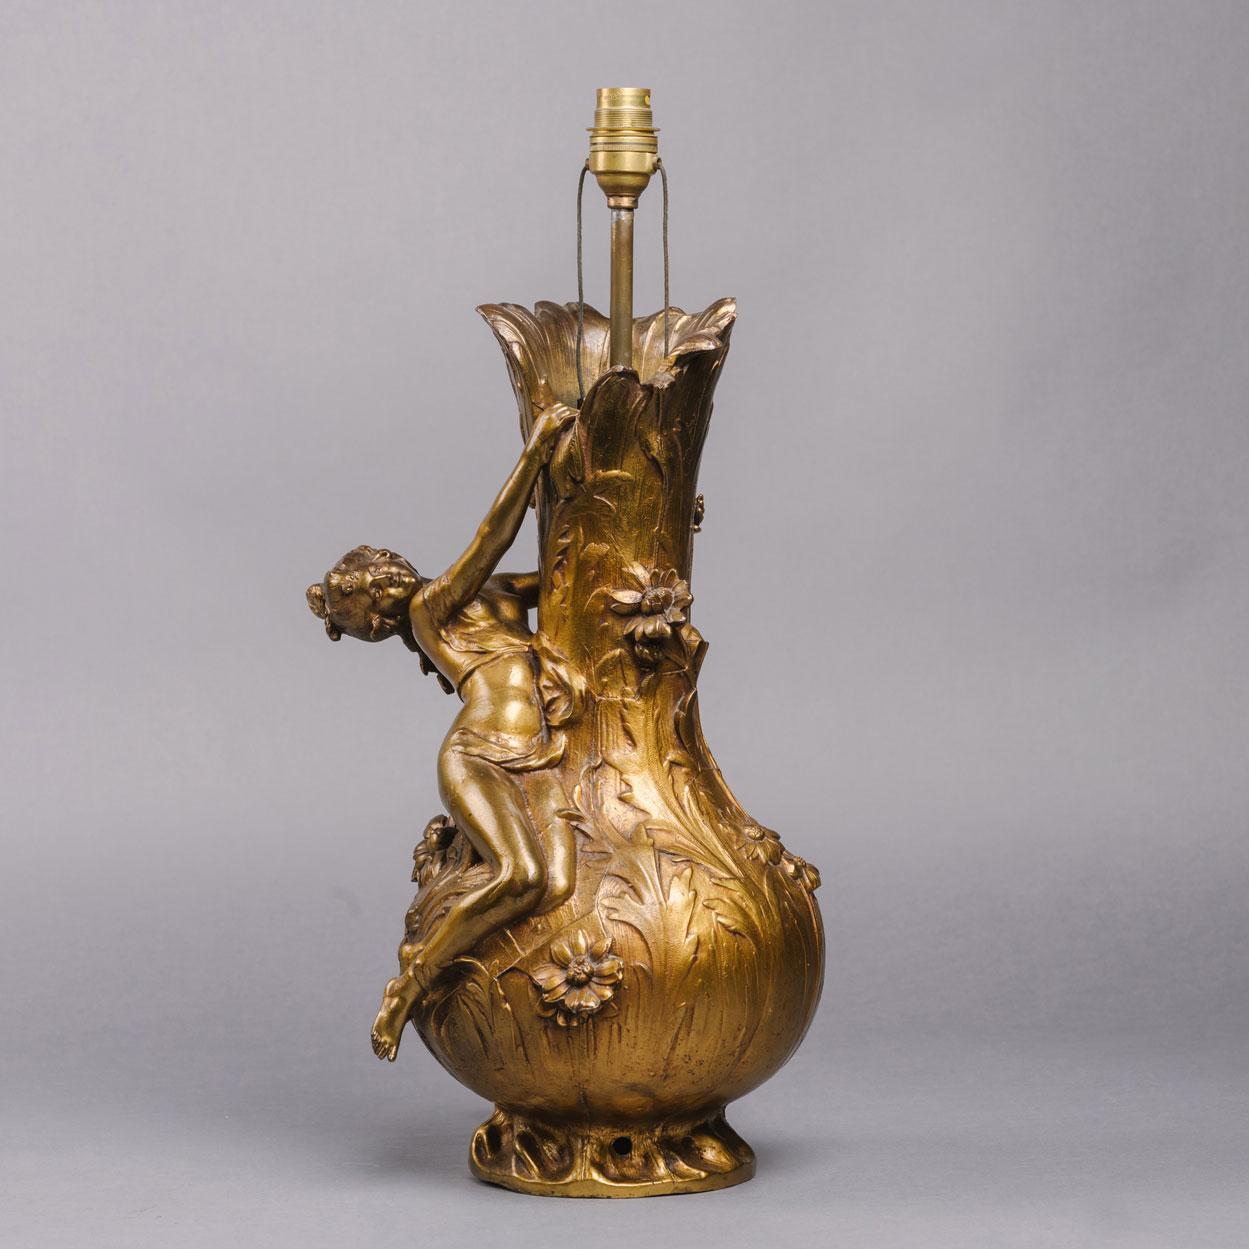 Vase Art Nouveau en bronze doré représentant une naïade, d'après Auguste Moreau, aujourd'hui monté en lampe.

Signé sur le corps 